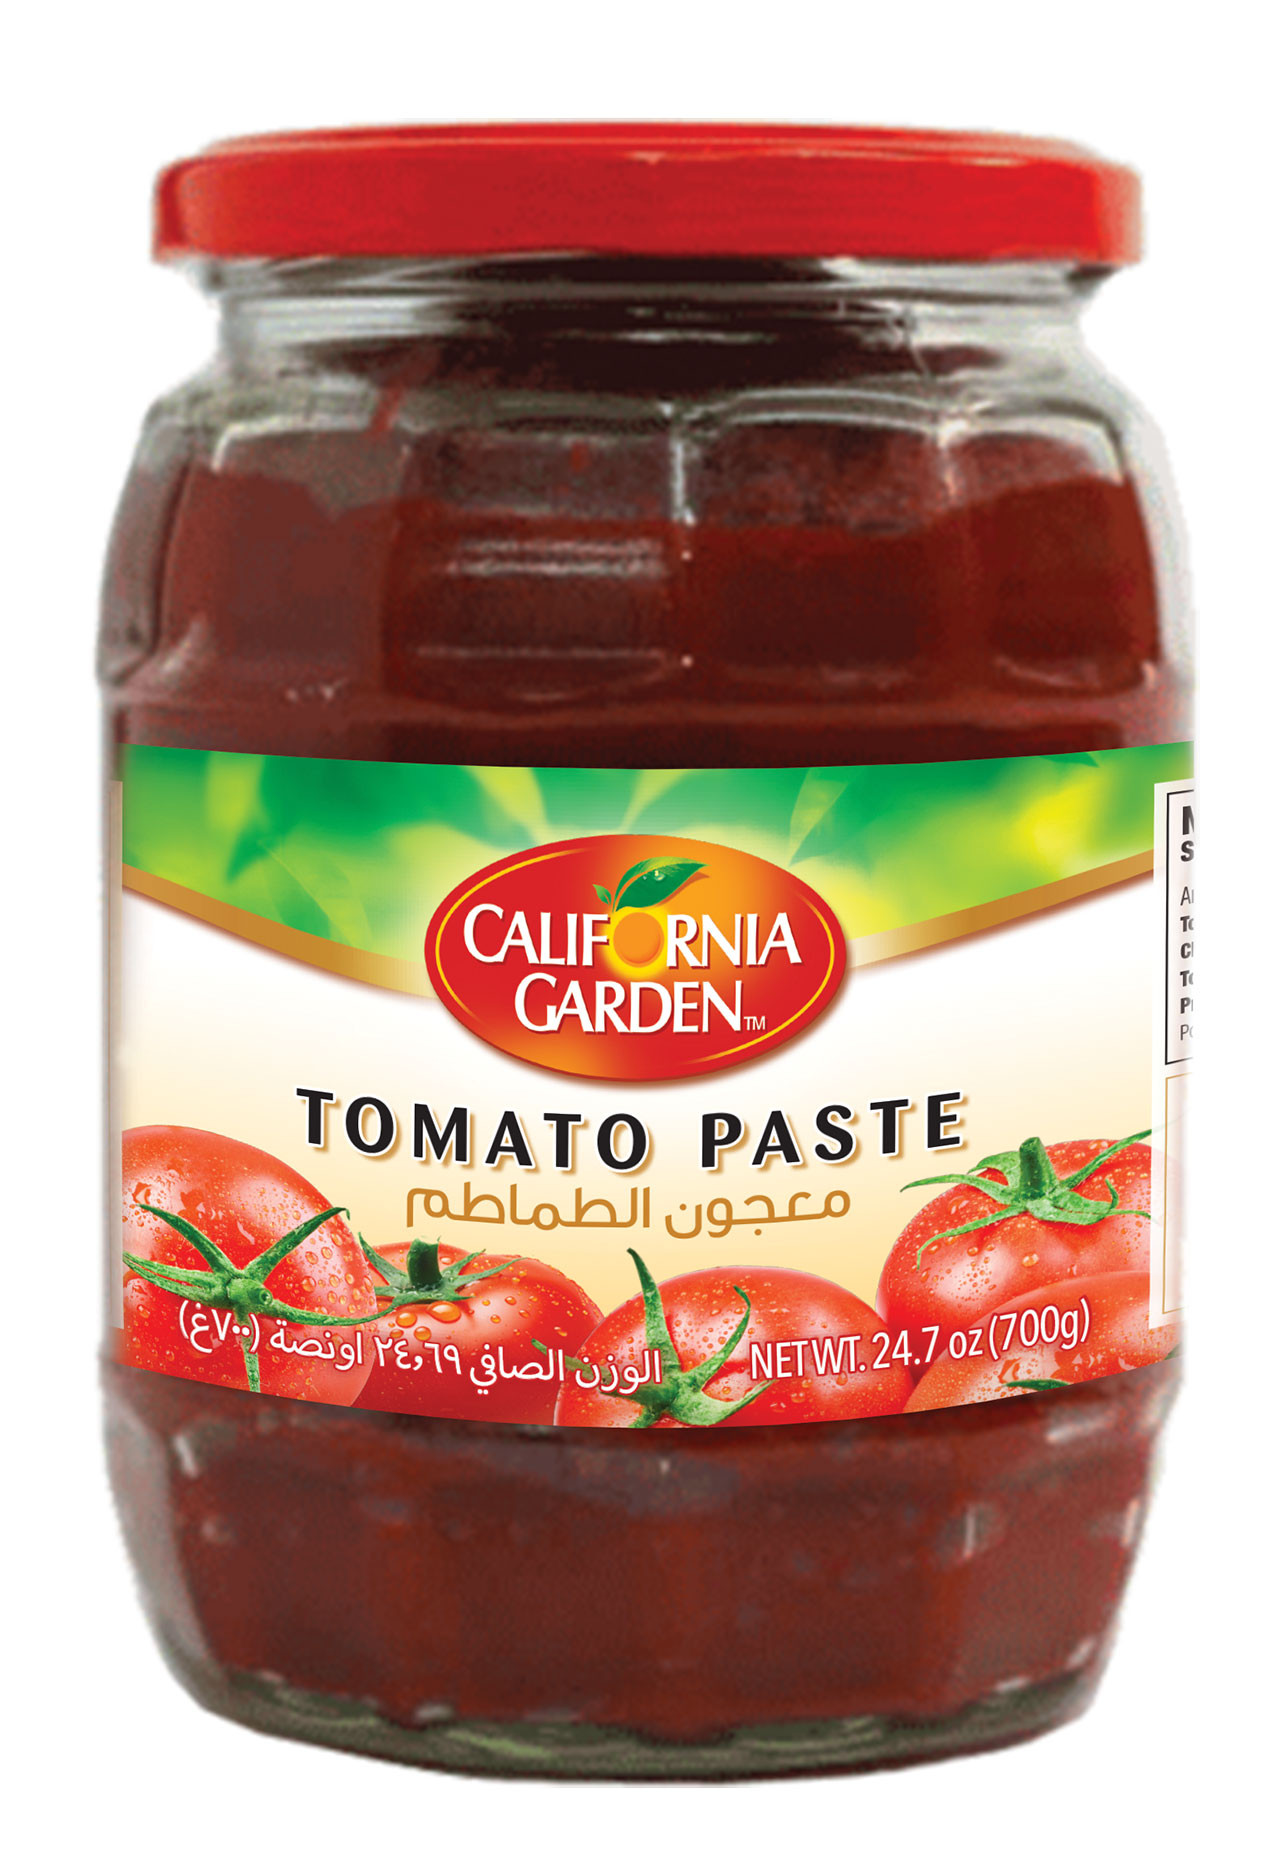 Tomato Paste To Tomato Sauce
 Tomato Paste in Jars – California Garden